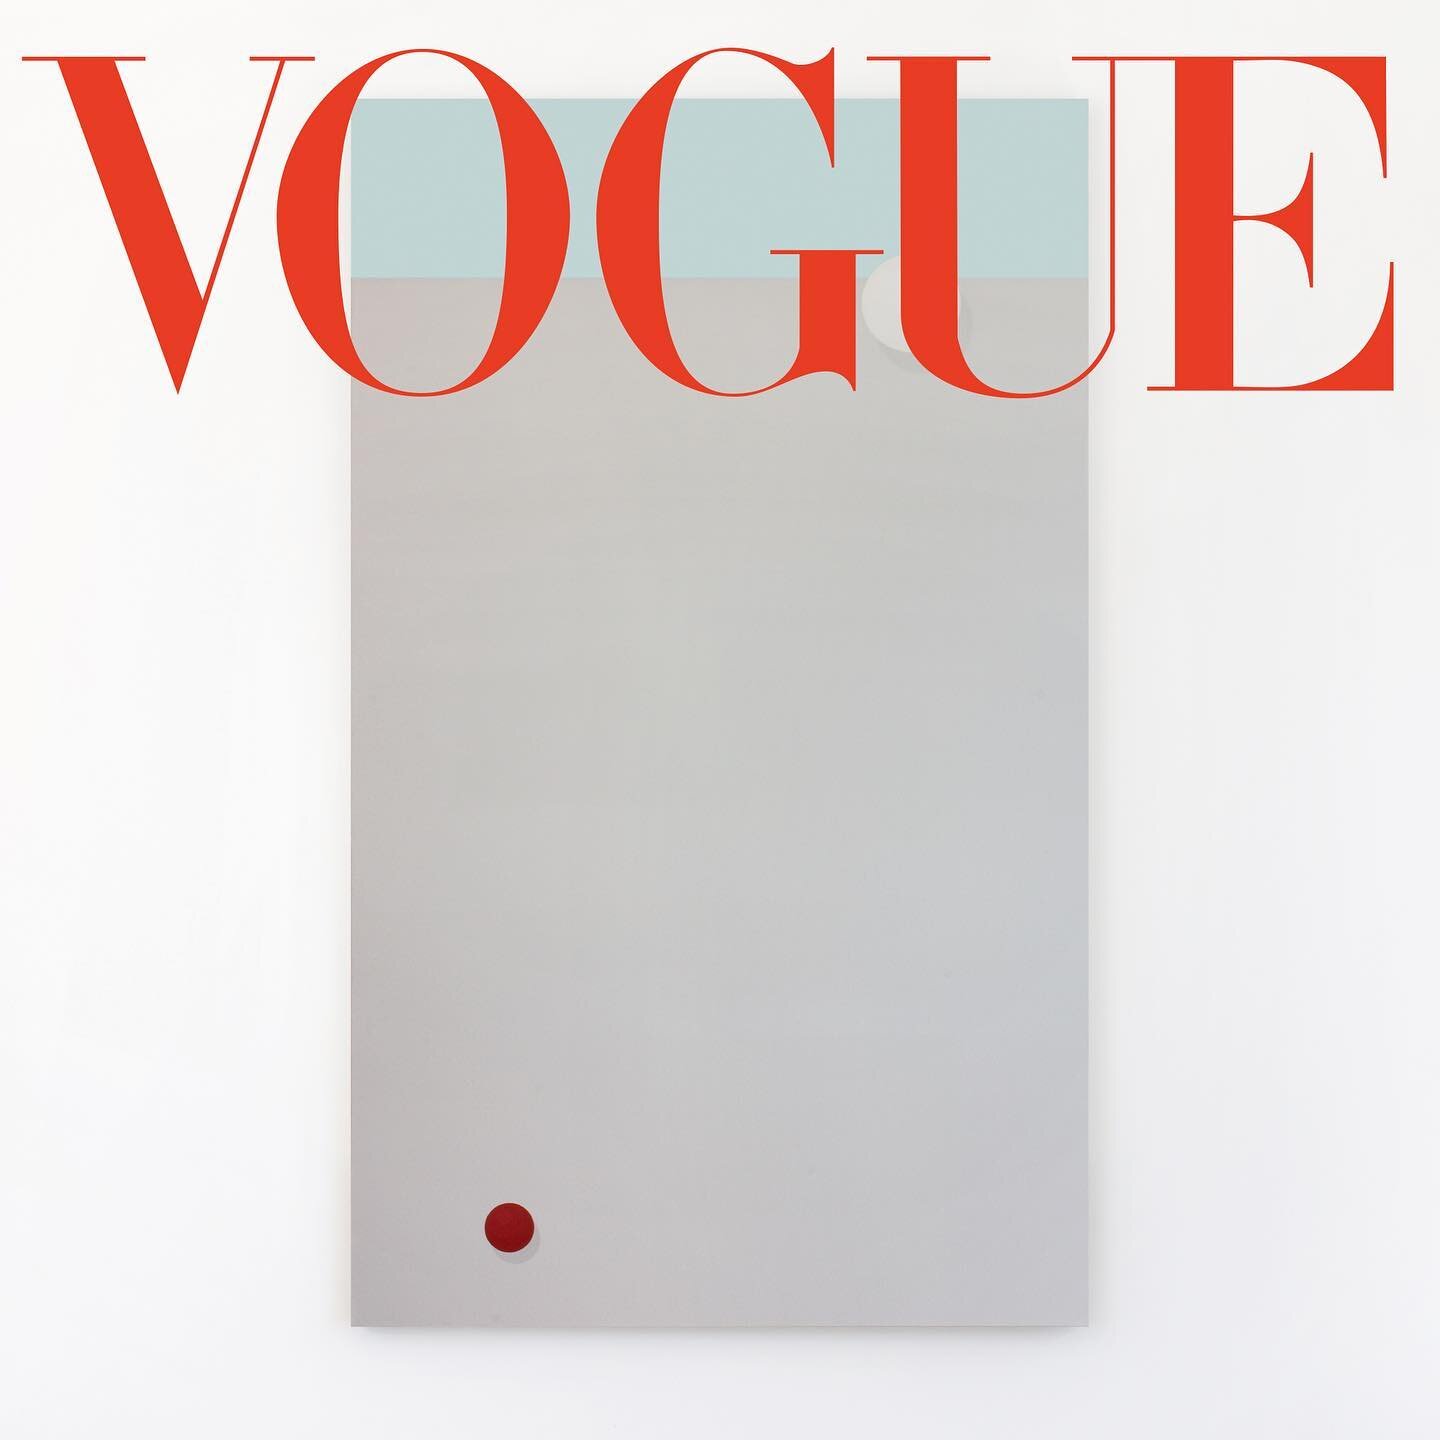 &rsquo;Moonrise&rsquo; in Vogue Dec. 2020.
@britishvogue @voguemagazine 

@vogue @condenast #vogue #britishvogue #condenast #magazine